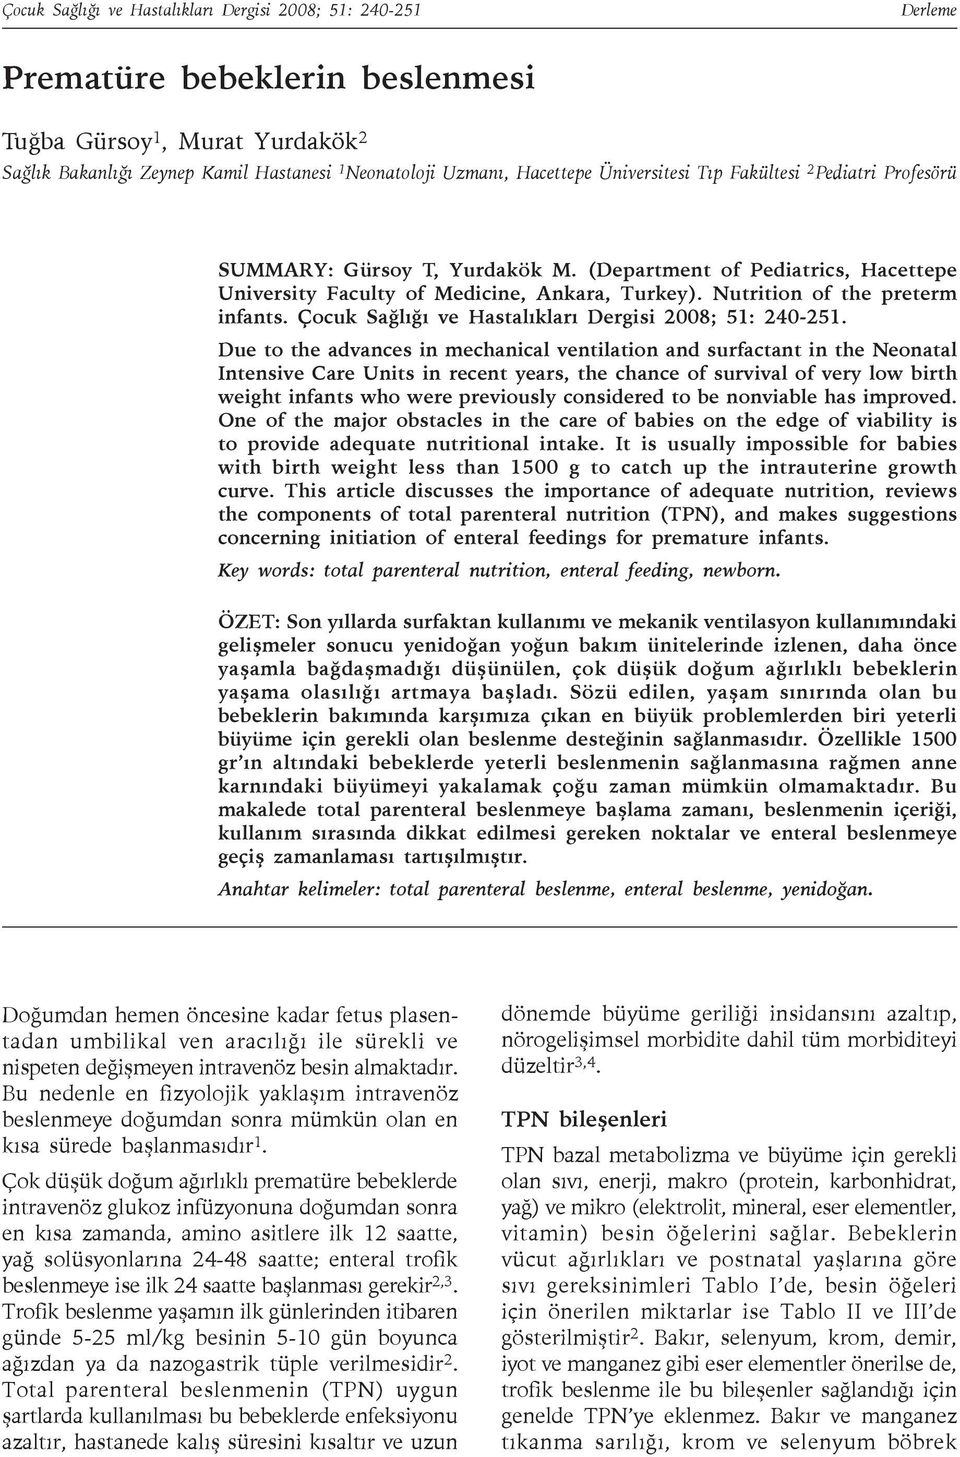 Nutrition of the preterm infants. Çocuk Sağlığı ve Hastalıkları Dergisi 2008; 51: 240-251.